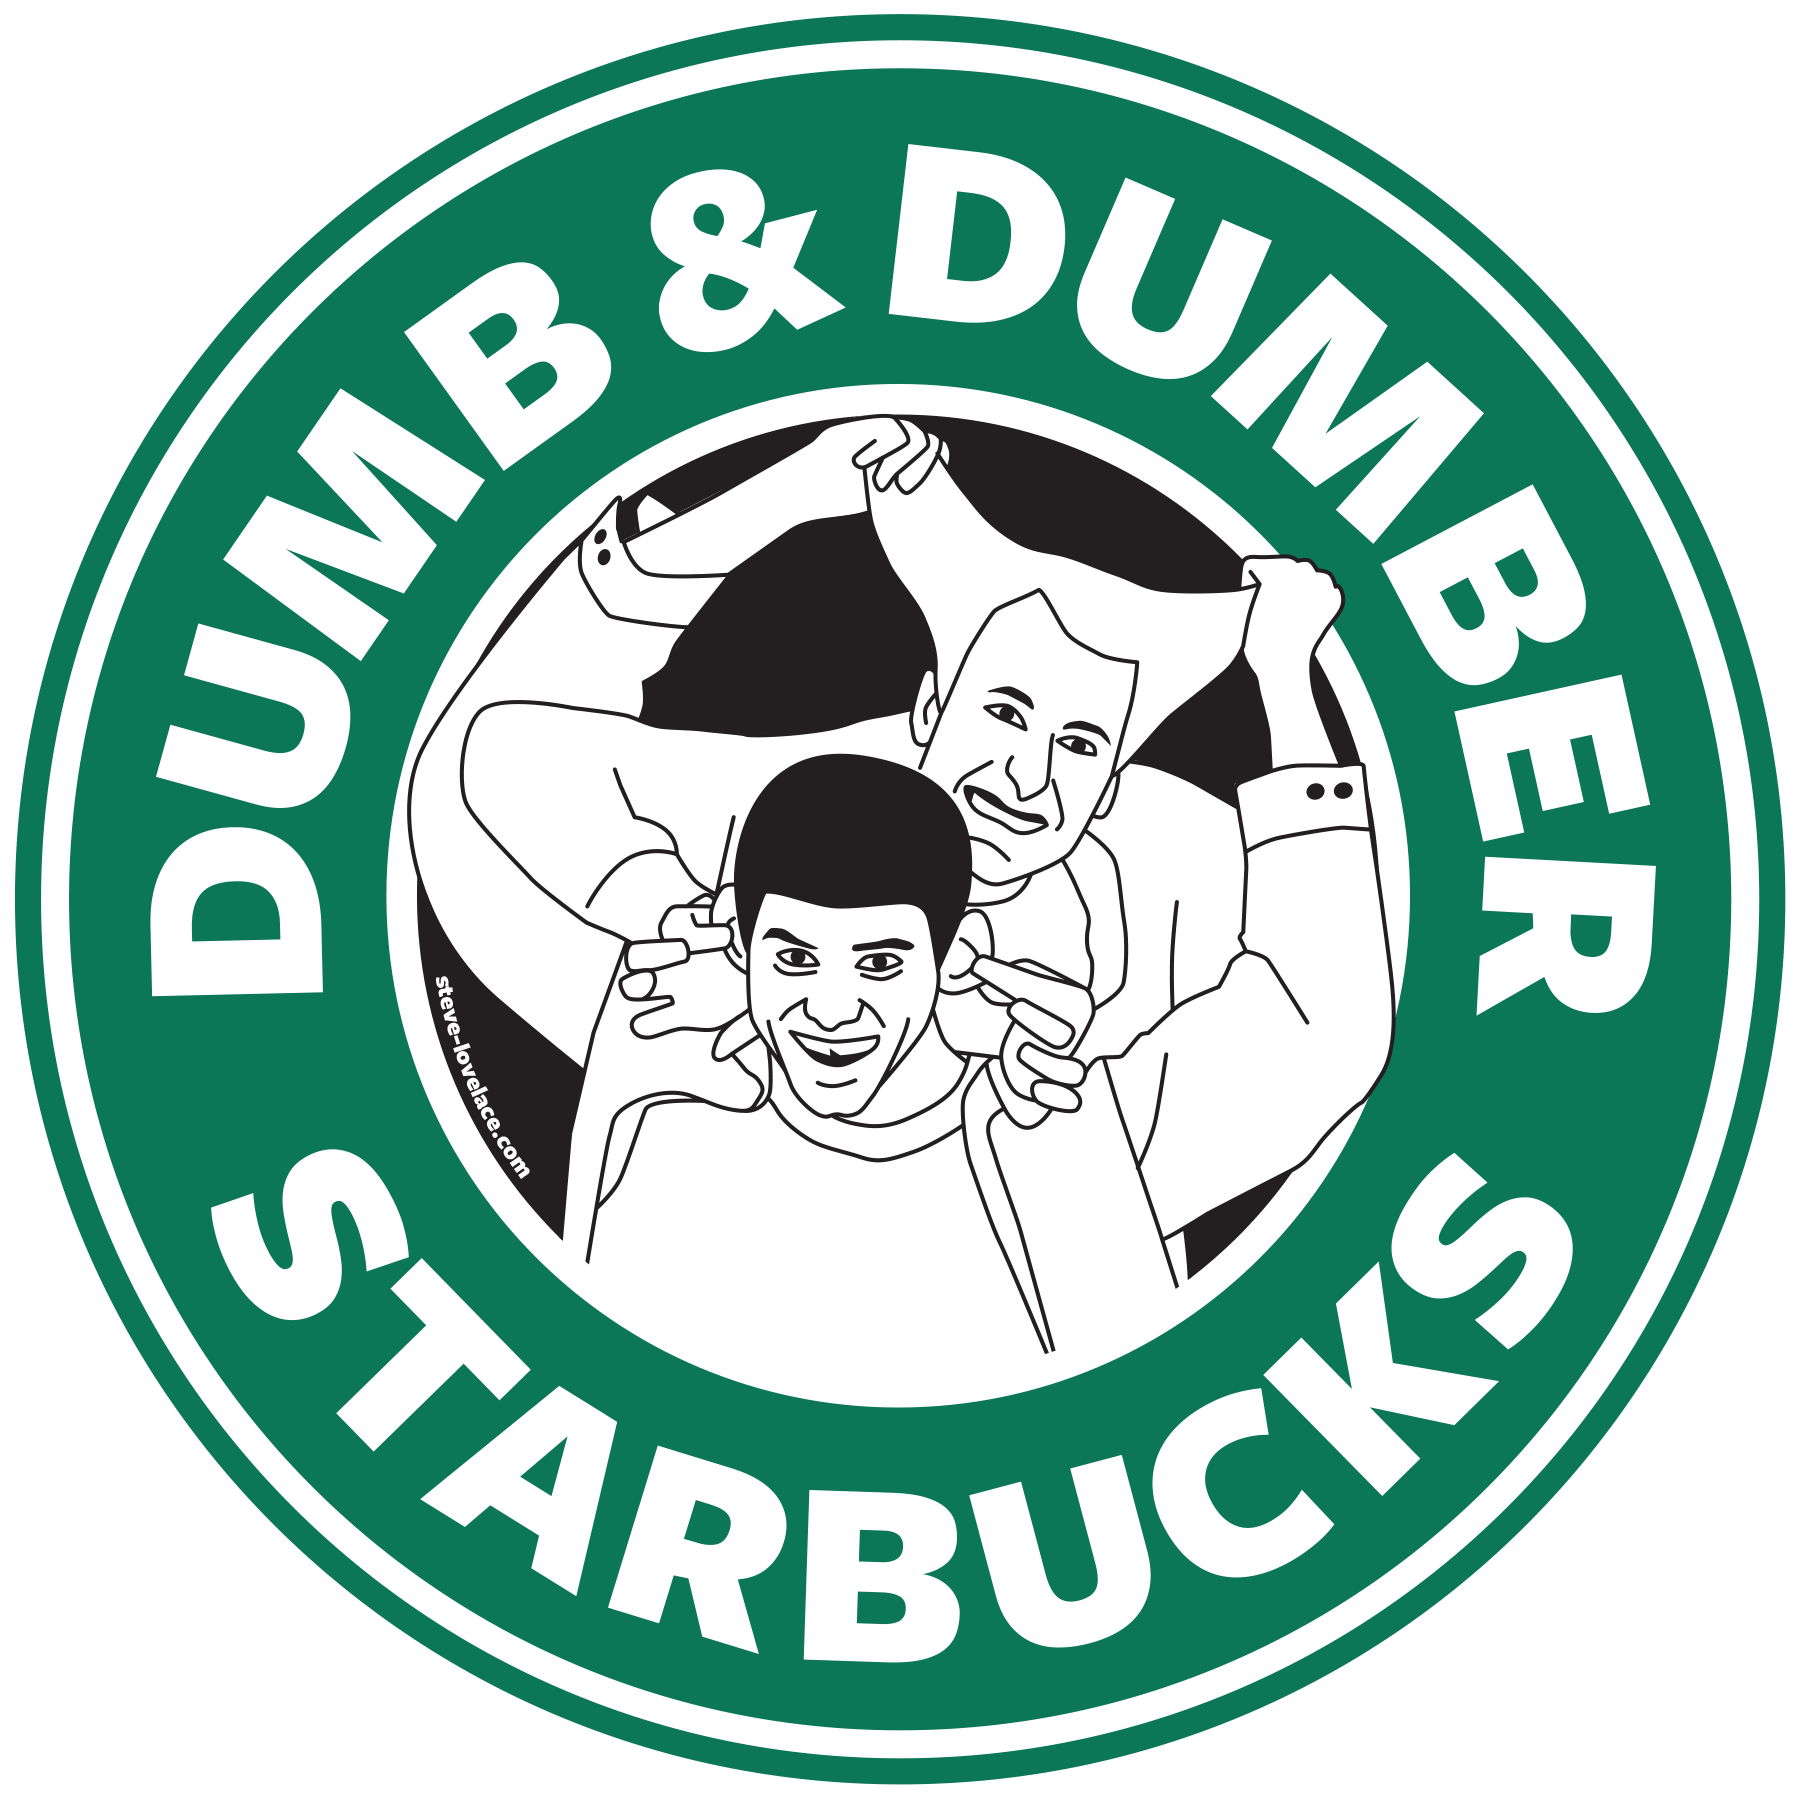 Dumb Starbucks Logo - Fake Starbucks Ideas